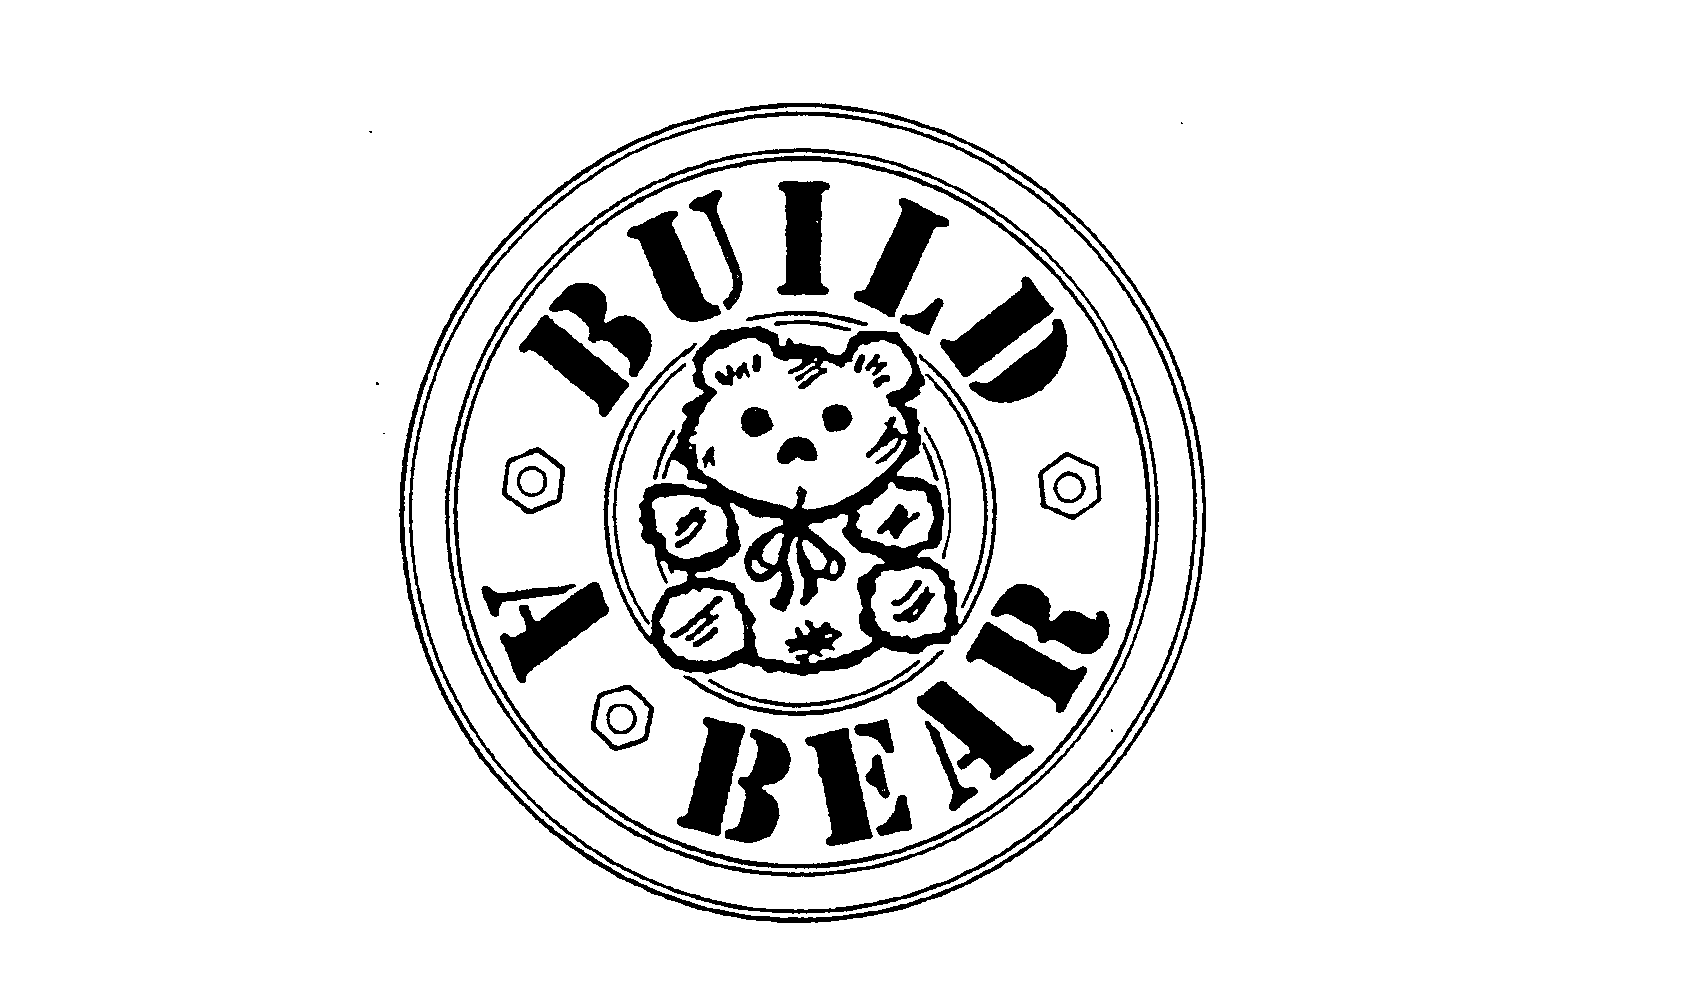 BUILD A BEAR